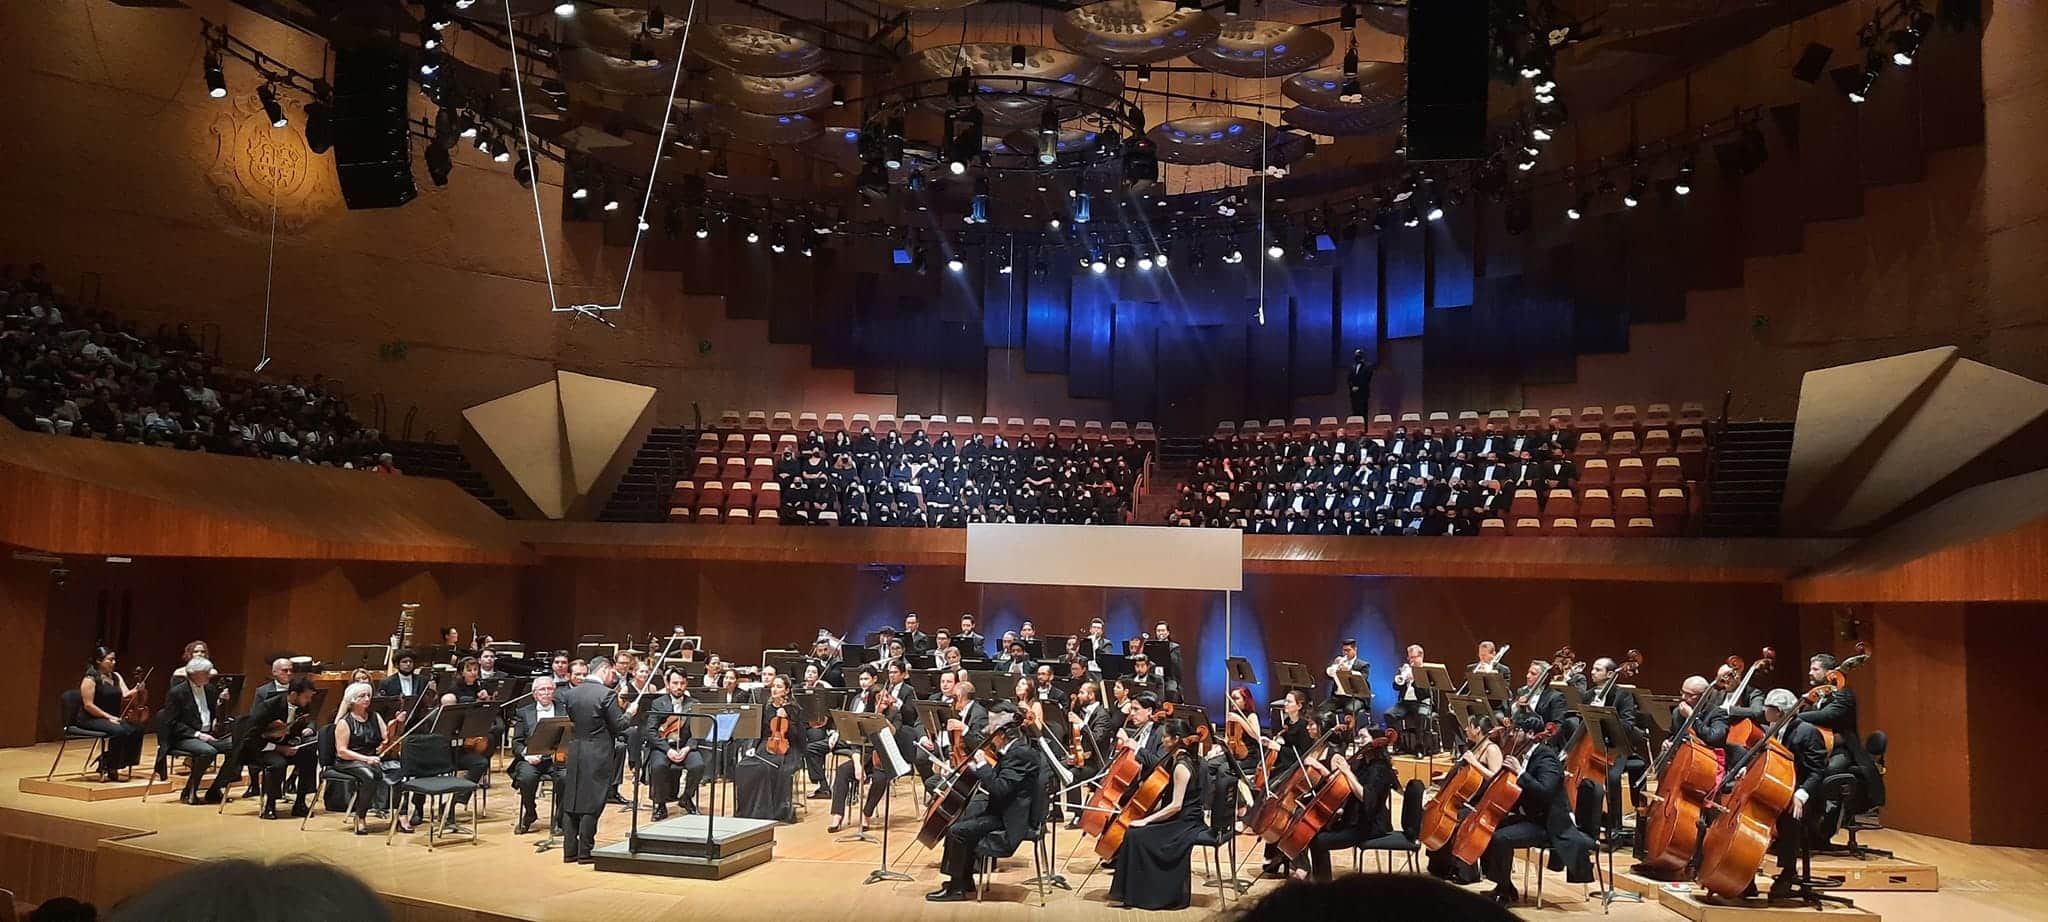 La Orquesta Sinfónica de Minería celebra su 45 aniversario con estos eventos